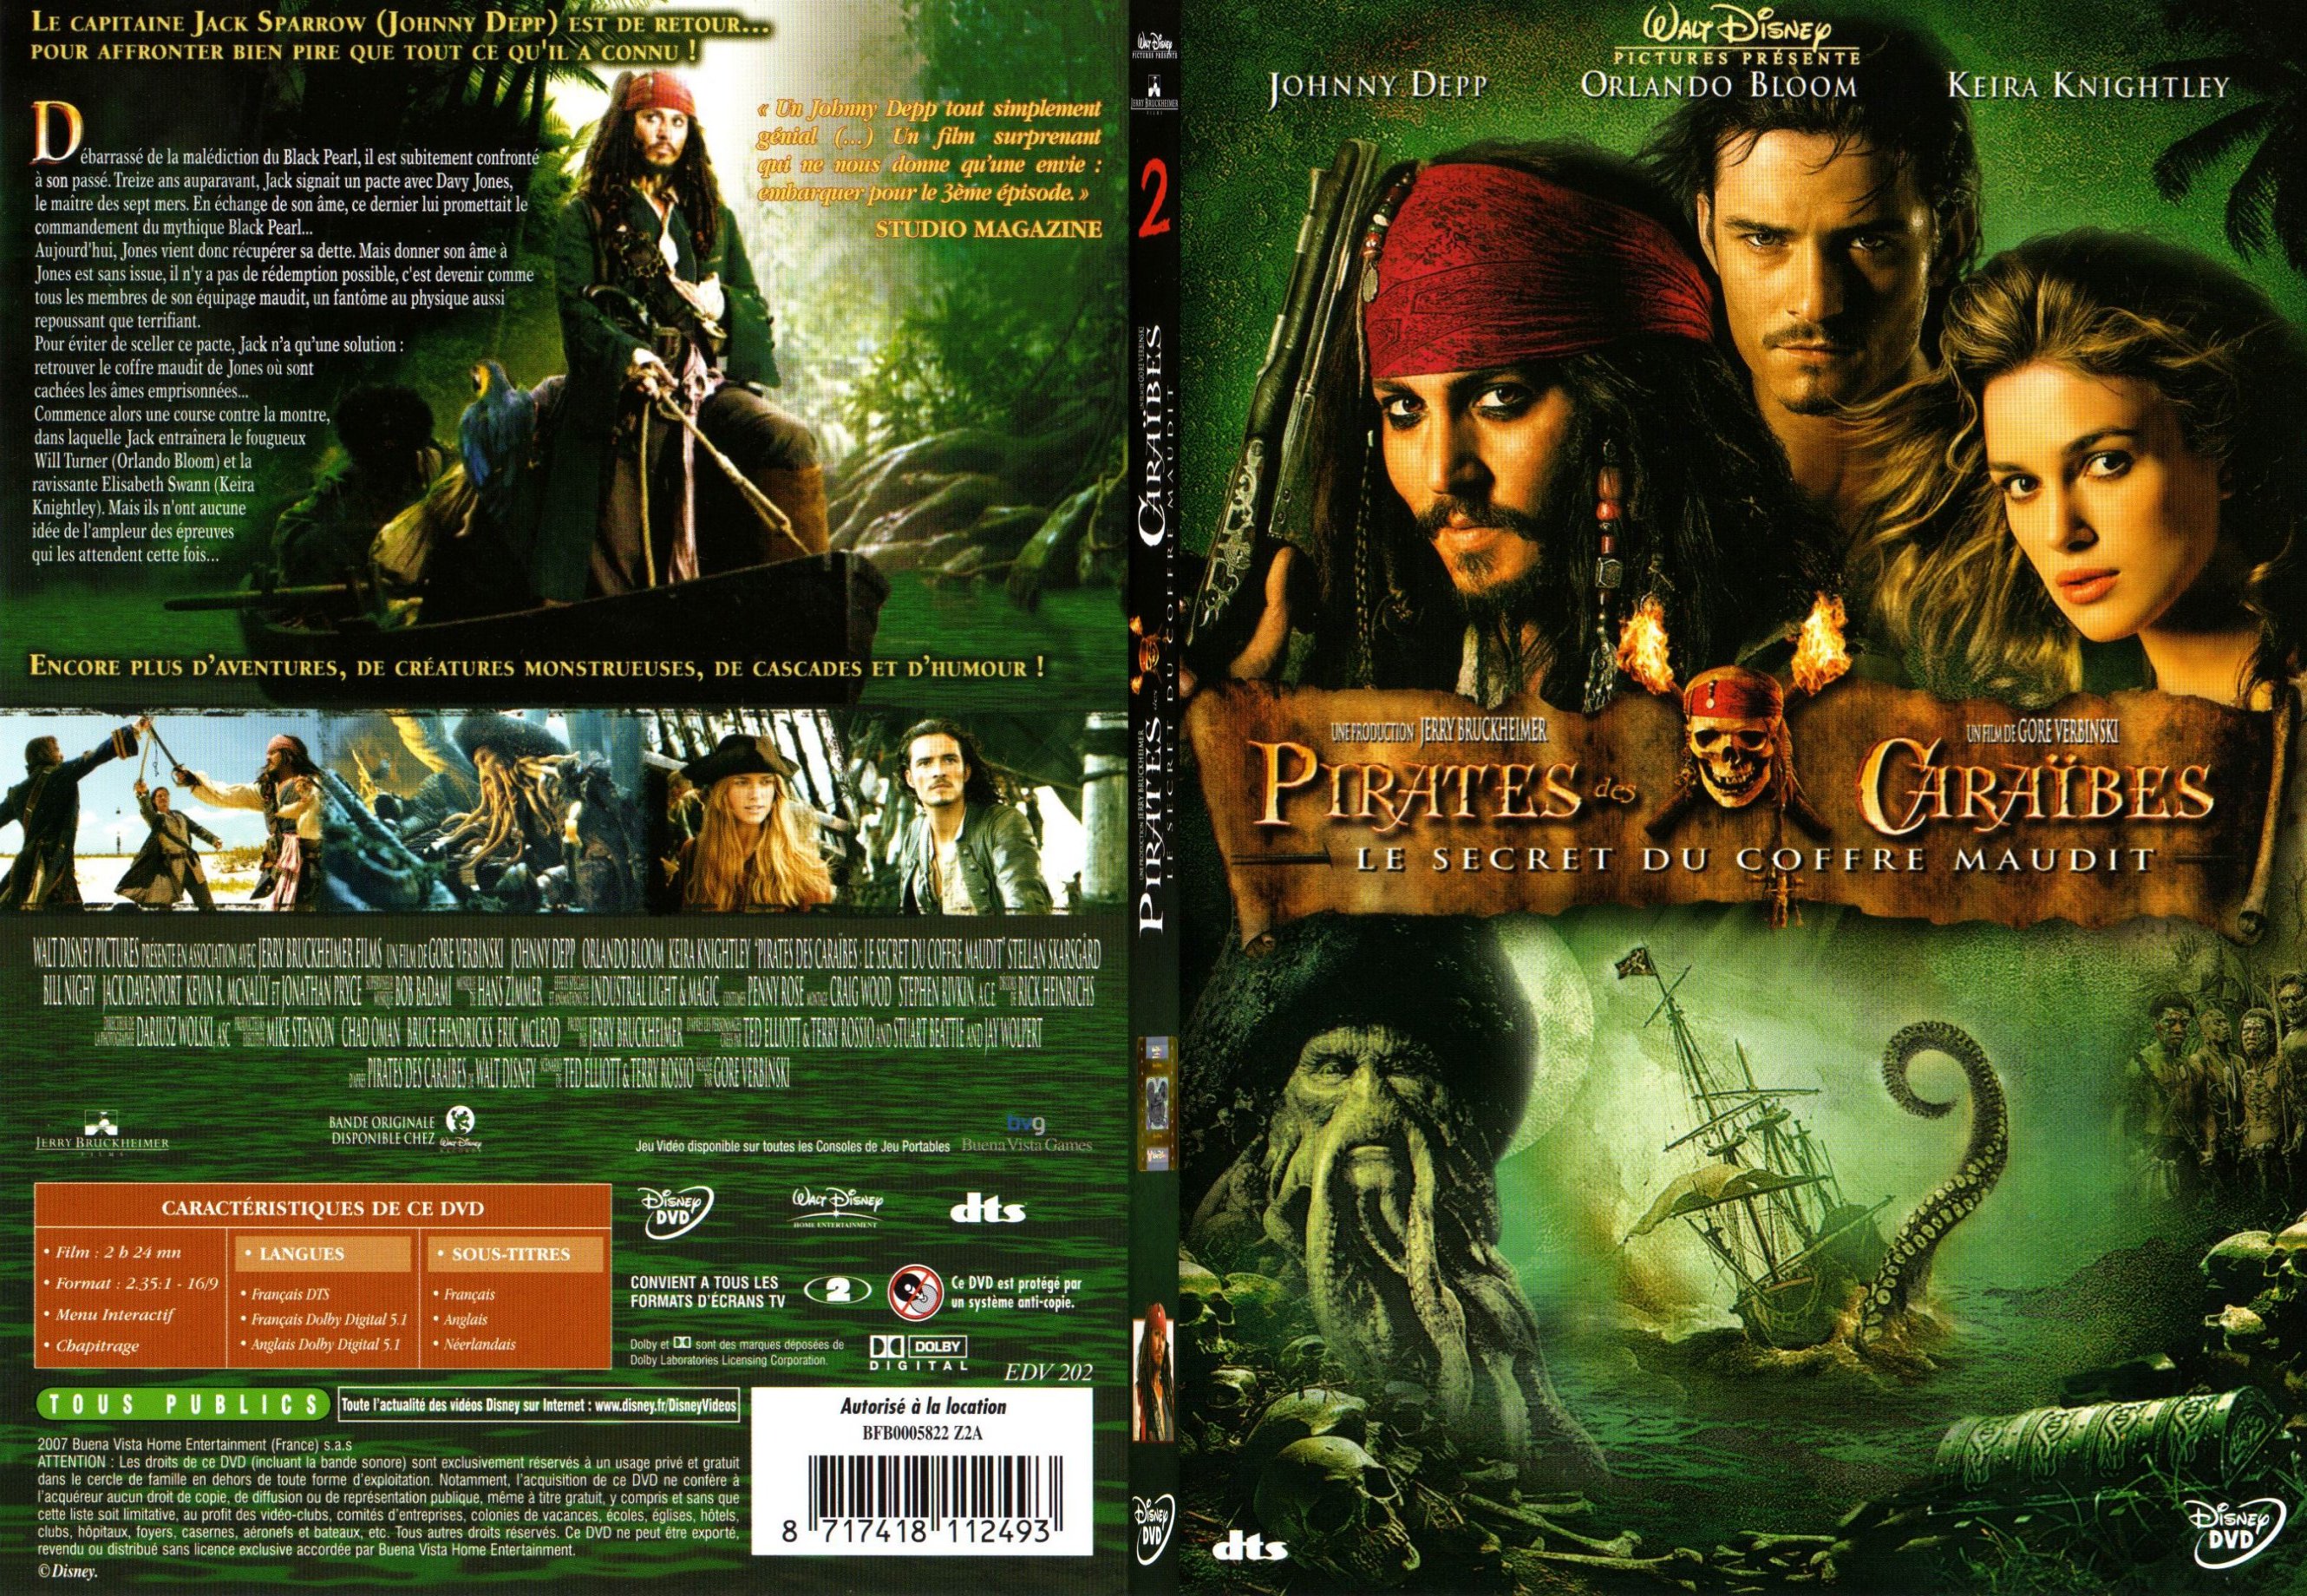 Jaquette DVD Pirates des Caraibes 2 - SLIM